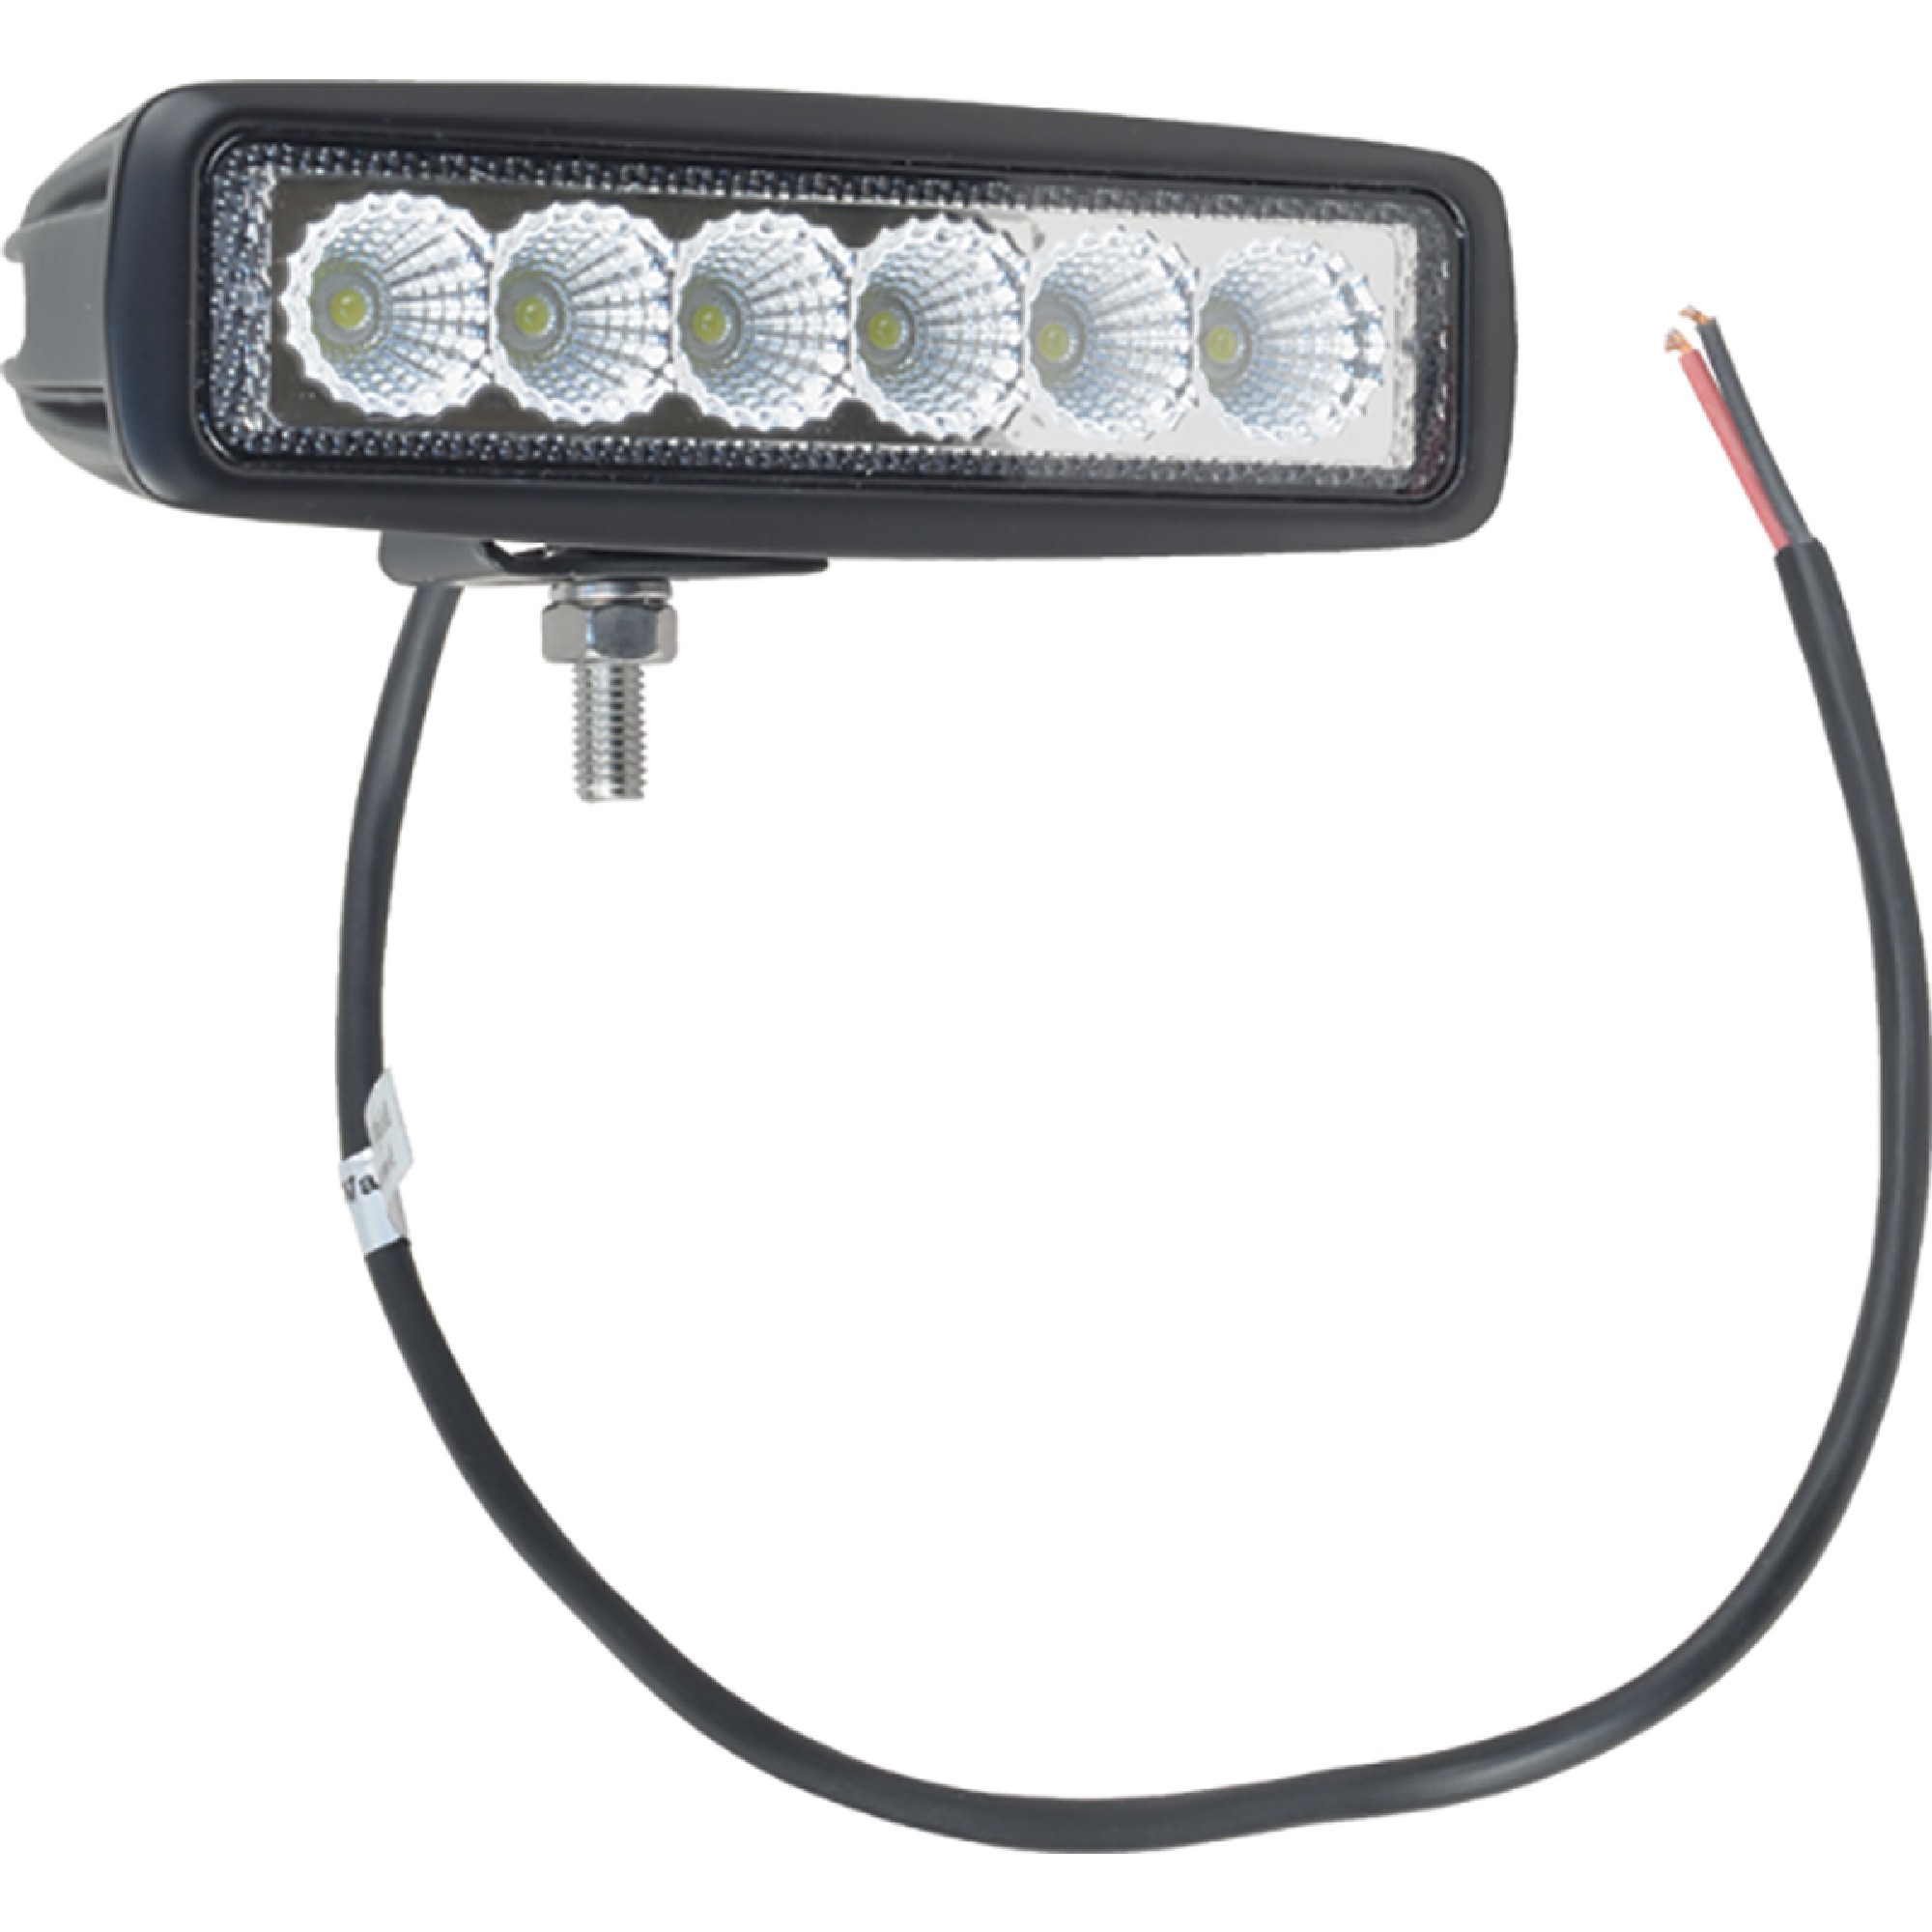 J&N Work Light for 12/24V, 6 LED, 1, 000 Lumens, White, 6.3" x 1.8", Flood 550-10014